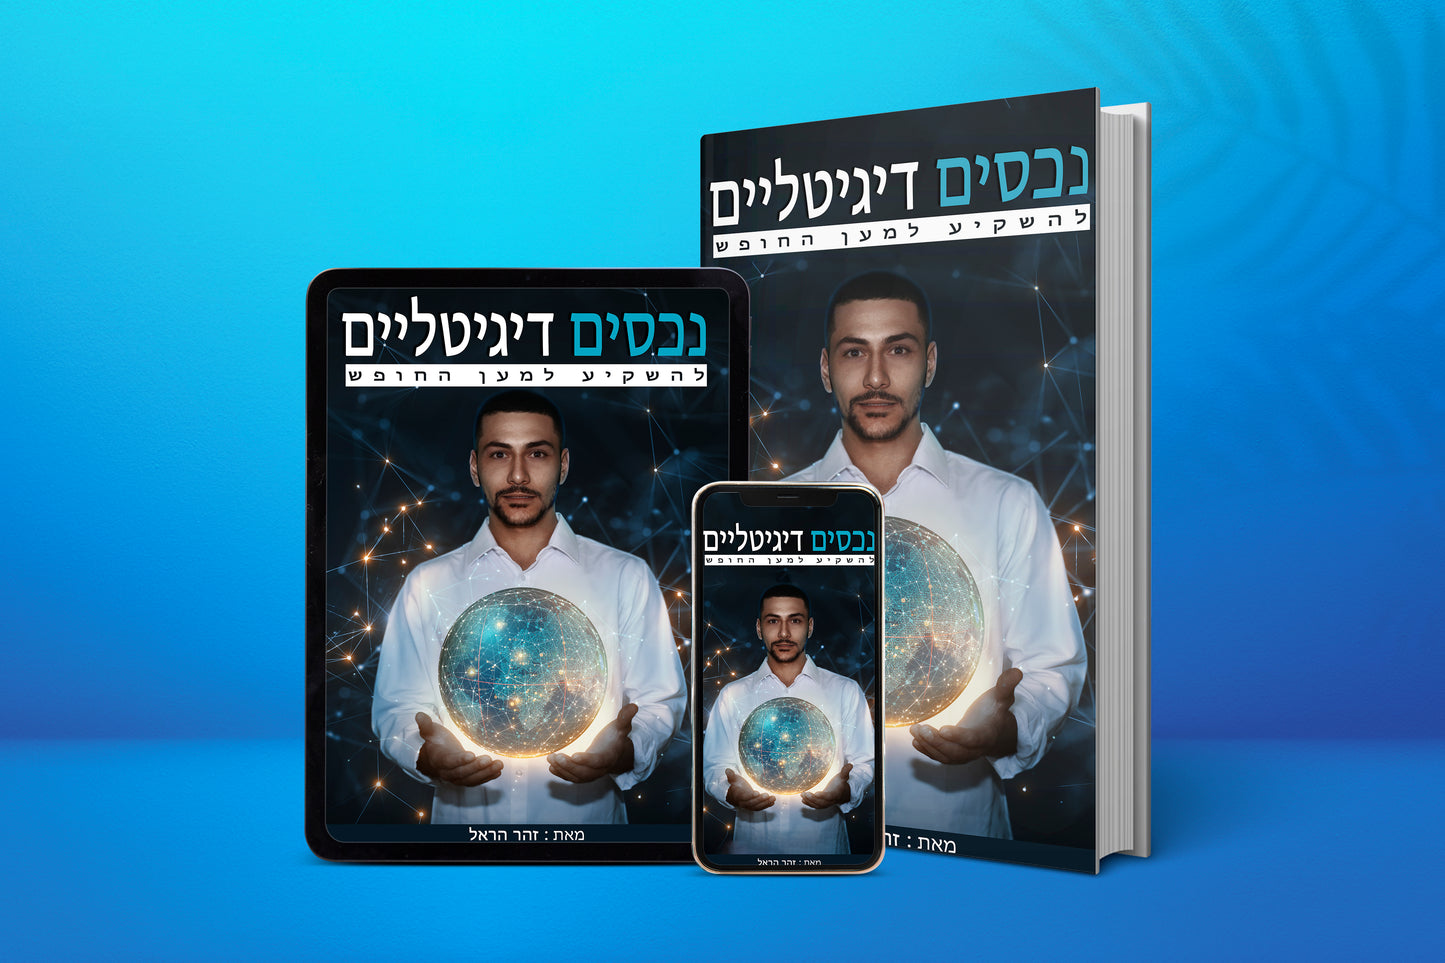 נכסים דיגיליים - להשקיע למען החופש ספר אלקטרוני בעברית